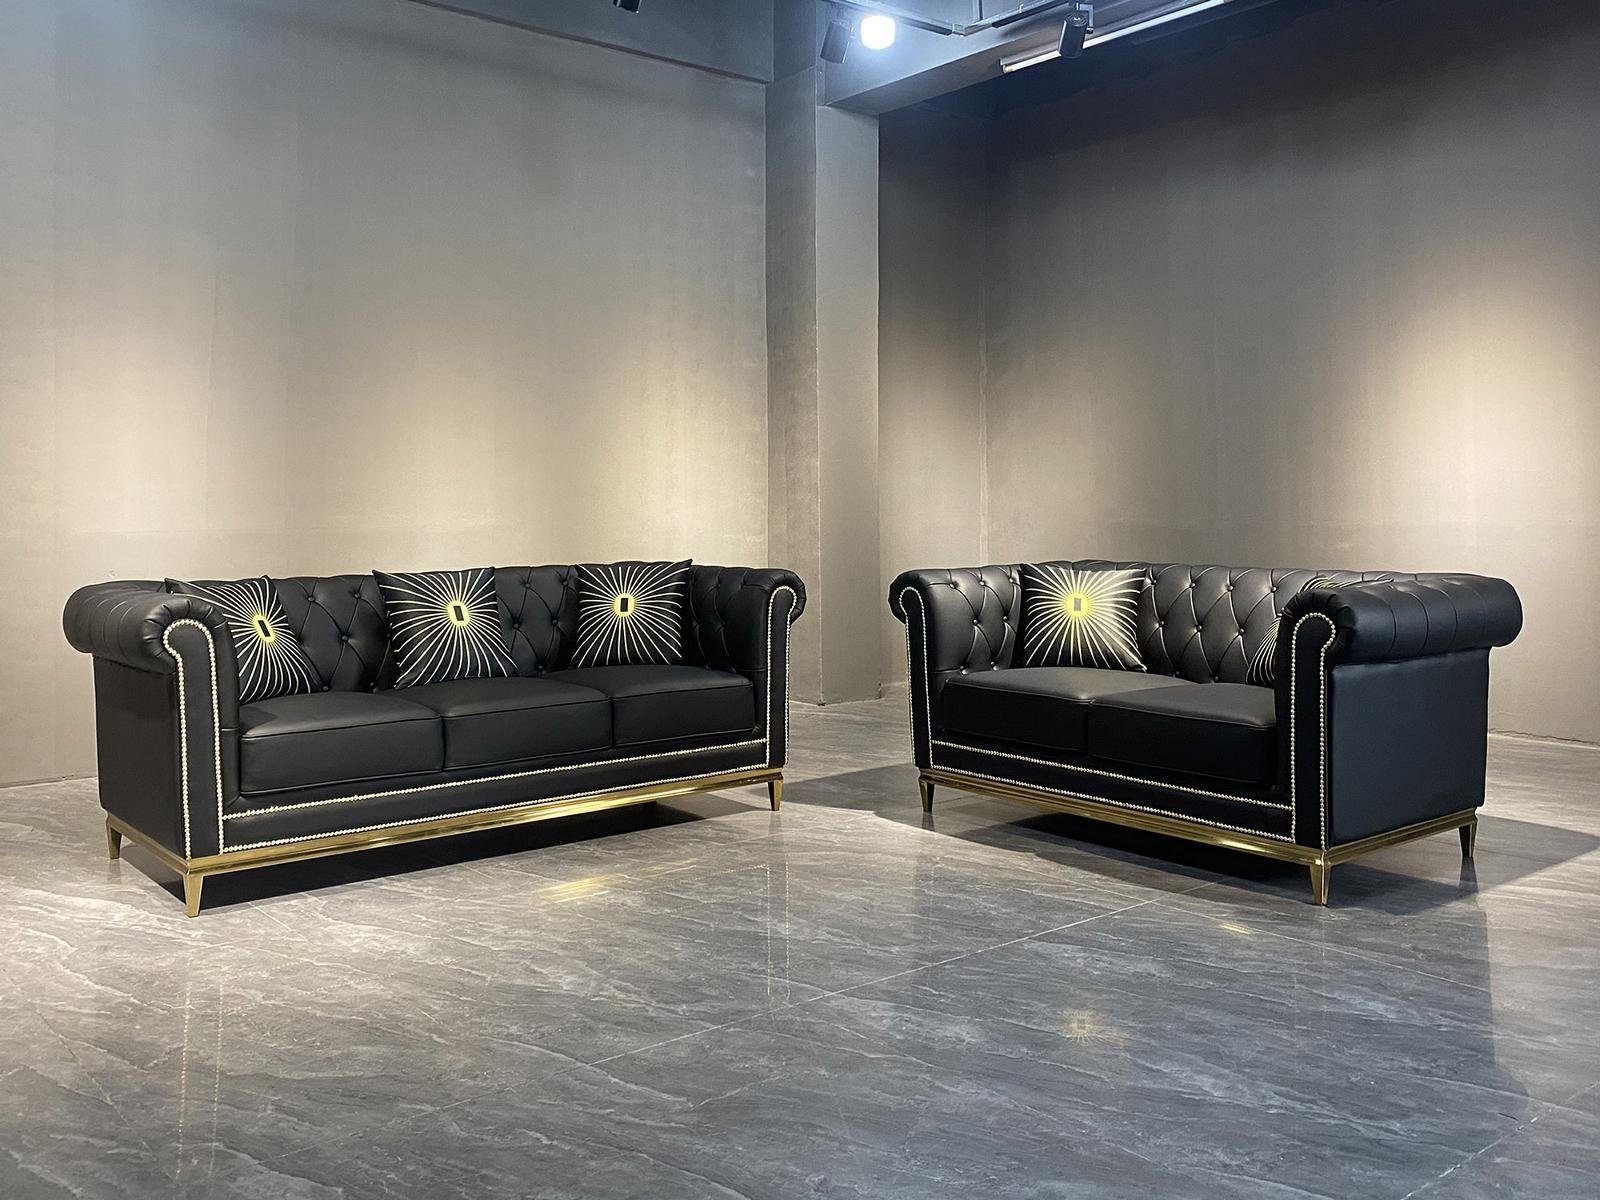 Sofa JVmoebel in Polstermöbel, Made Moderne Chesterfield New Europe Couchgarnitur luxus